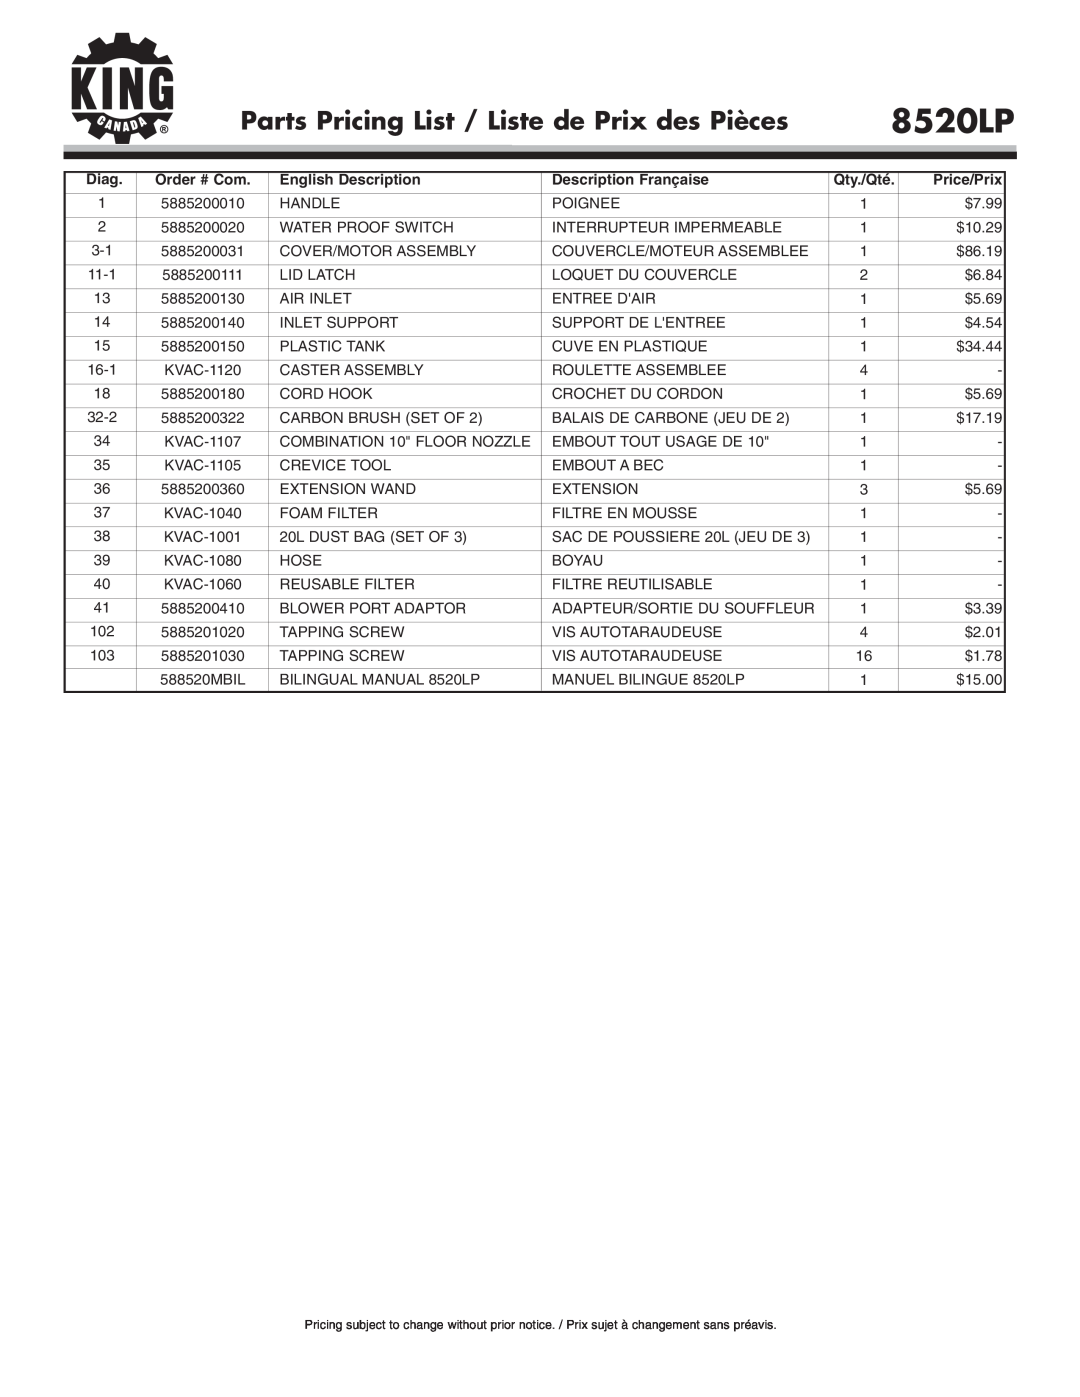 King Canada 8520LP Parts Pricing List / Liste de Prix des Pièces, Diag, English Description, Description Française 